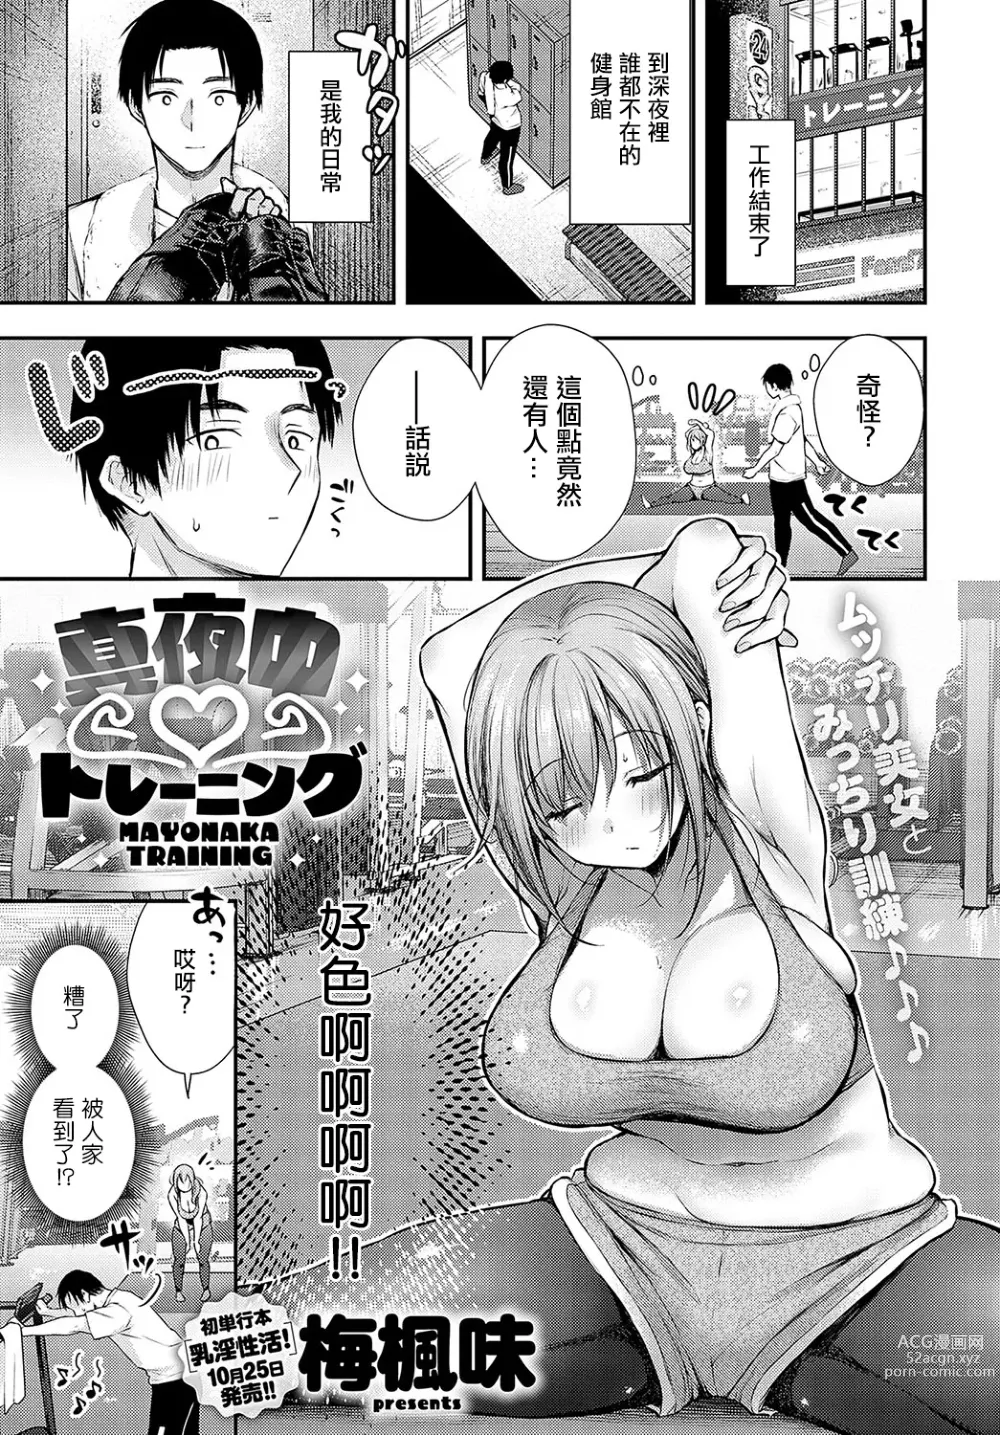 Page 1 of manga Mayonaka Training